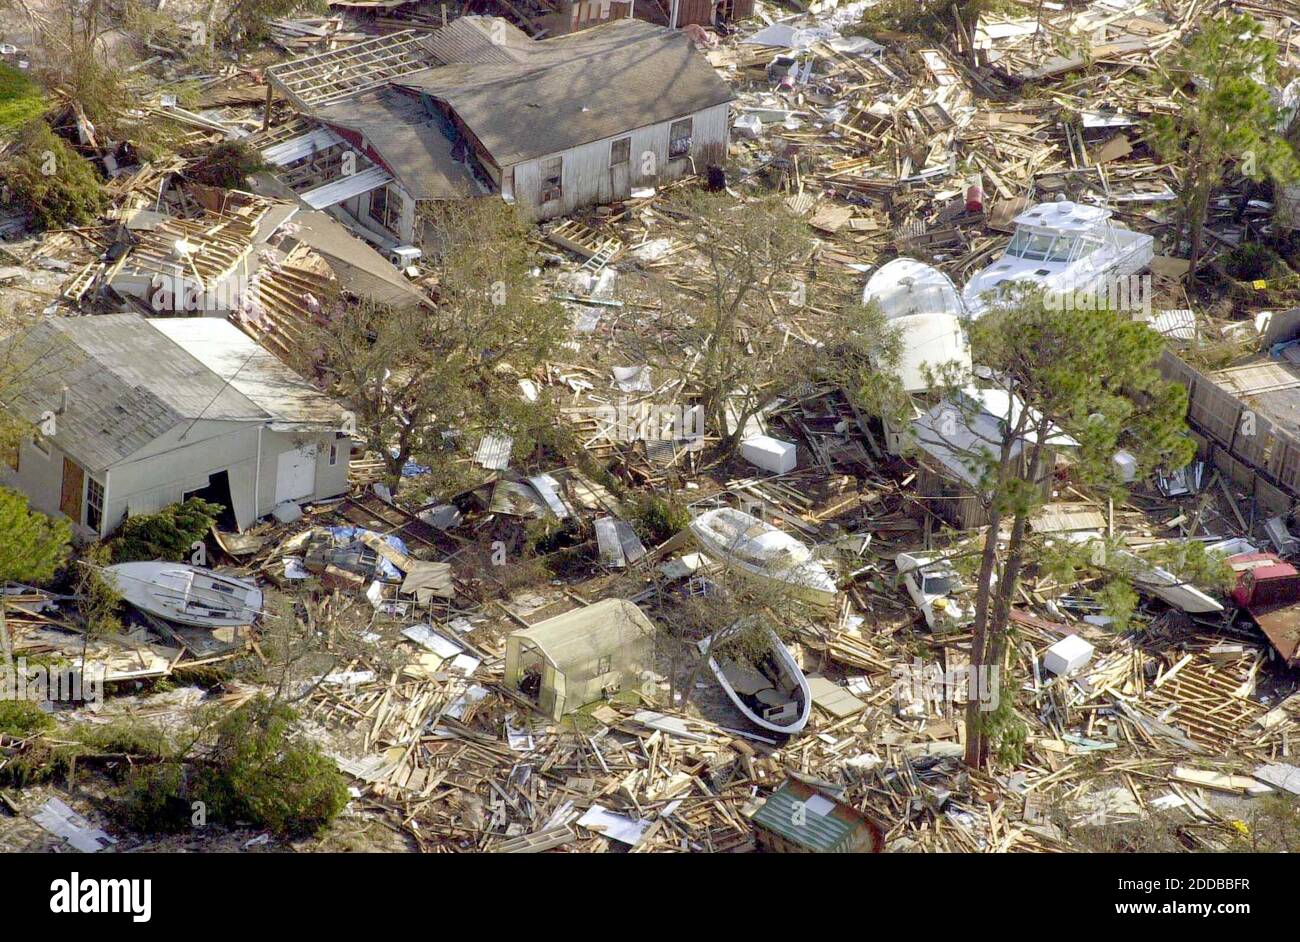 NO HAY PELÍCULA, NO HAY VÍDEO, NO hay televisión, NO HAY DOCUMENTAL - una vista aérea que muestra la devastación por el huracán Iván de la clave del perdido, Florida, al suroeste de Pensacola, se muestra el viernes, 17 de septiembre de 2004.Foto por Peter Andrew Bosch/Miami Herald/KRT/ABACA. Foto de stock